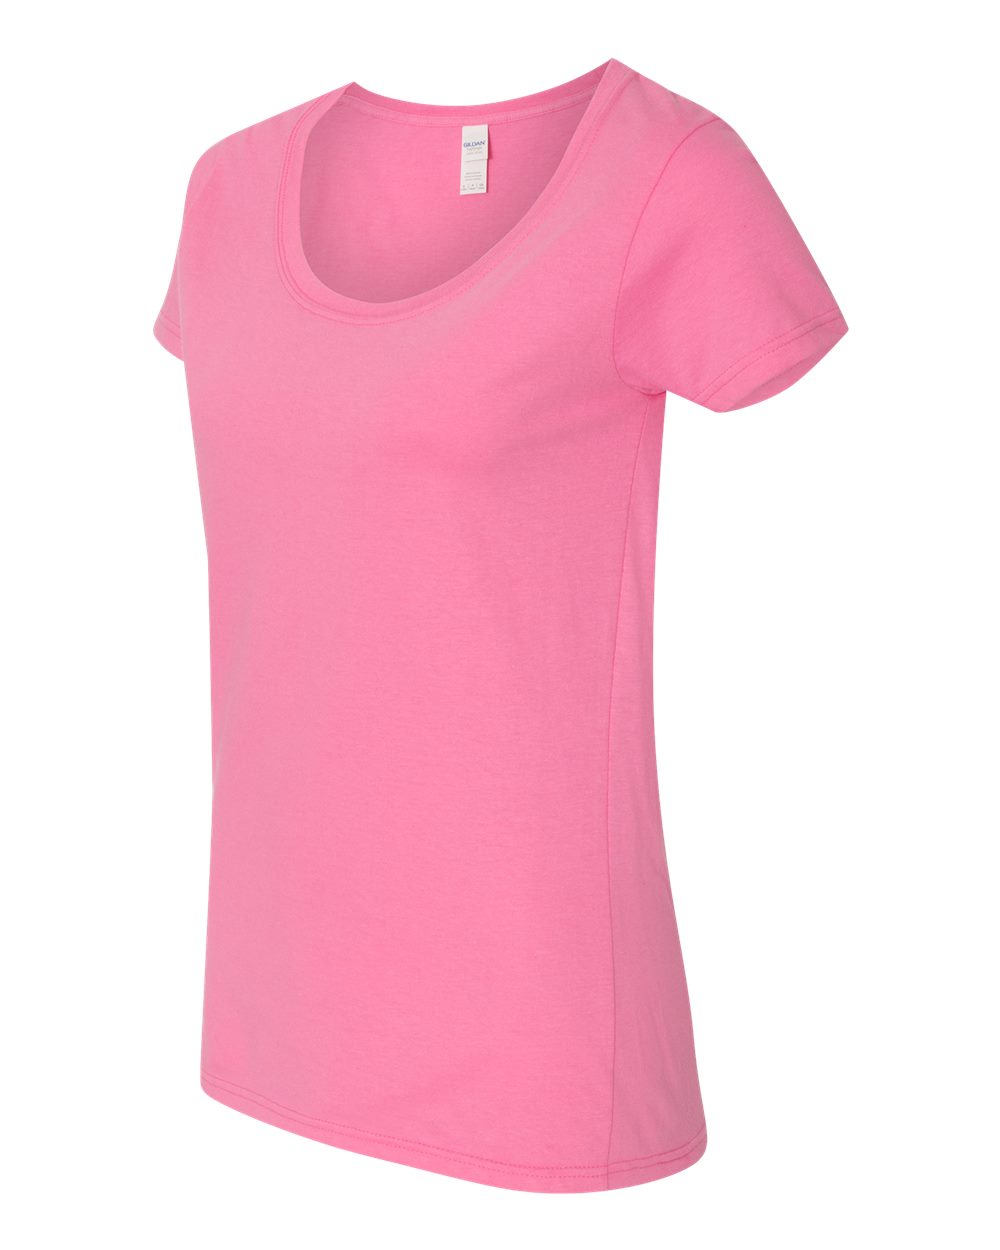 Gildan 64550L - Softstyle Women's Deep Scoopneck T-Shirt $3.92